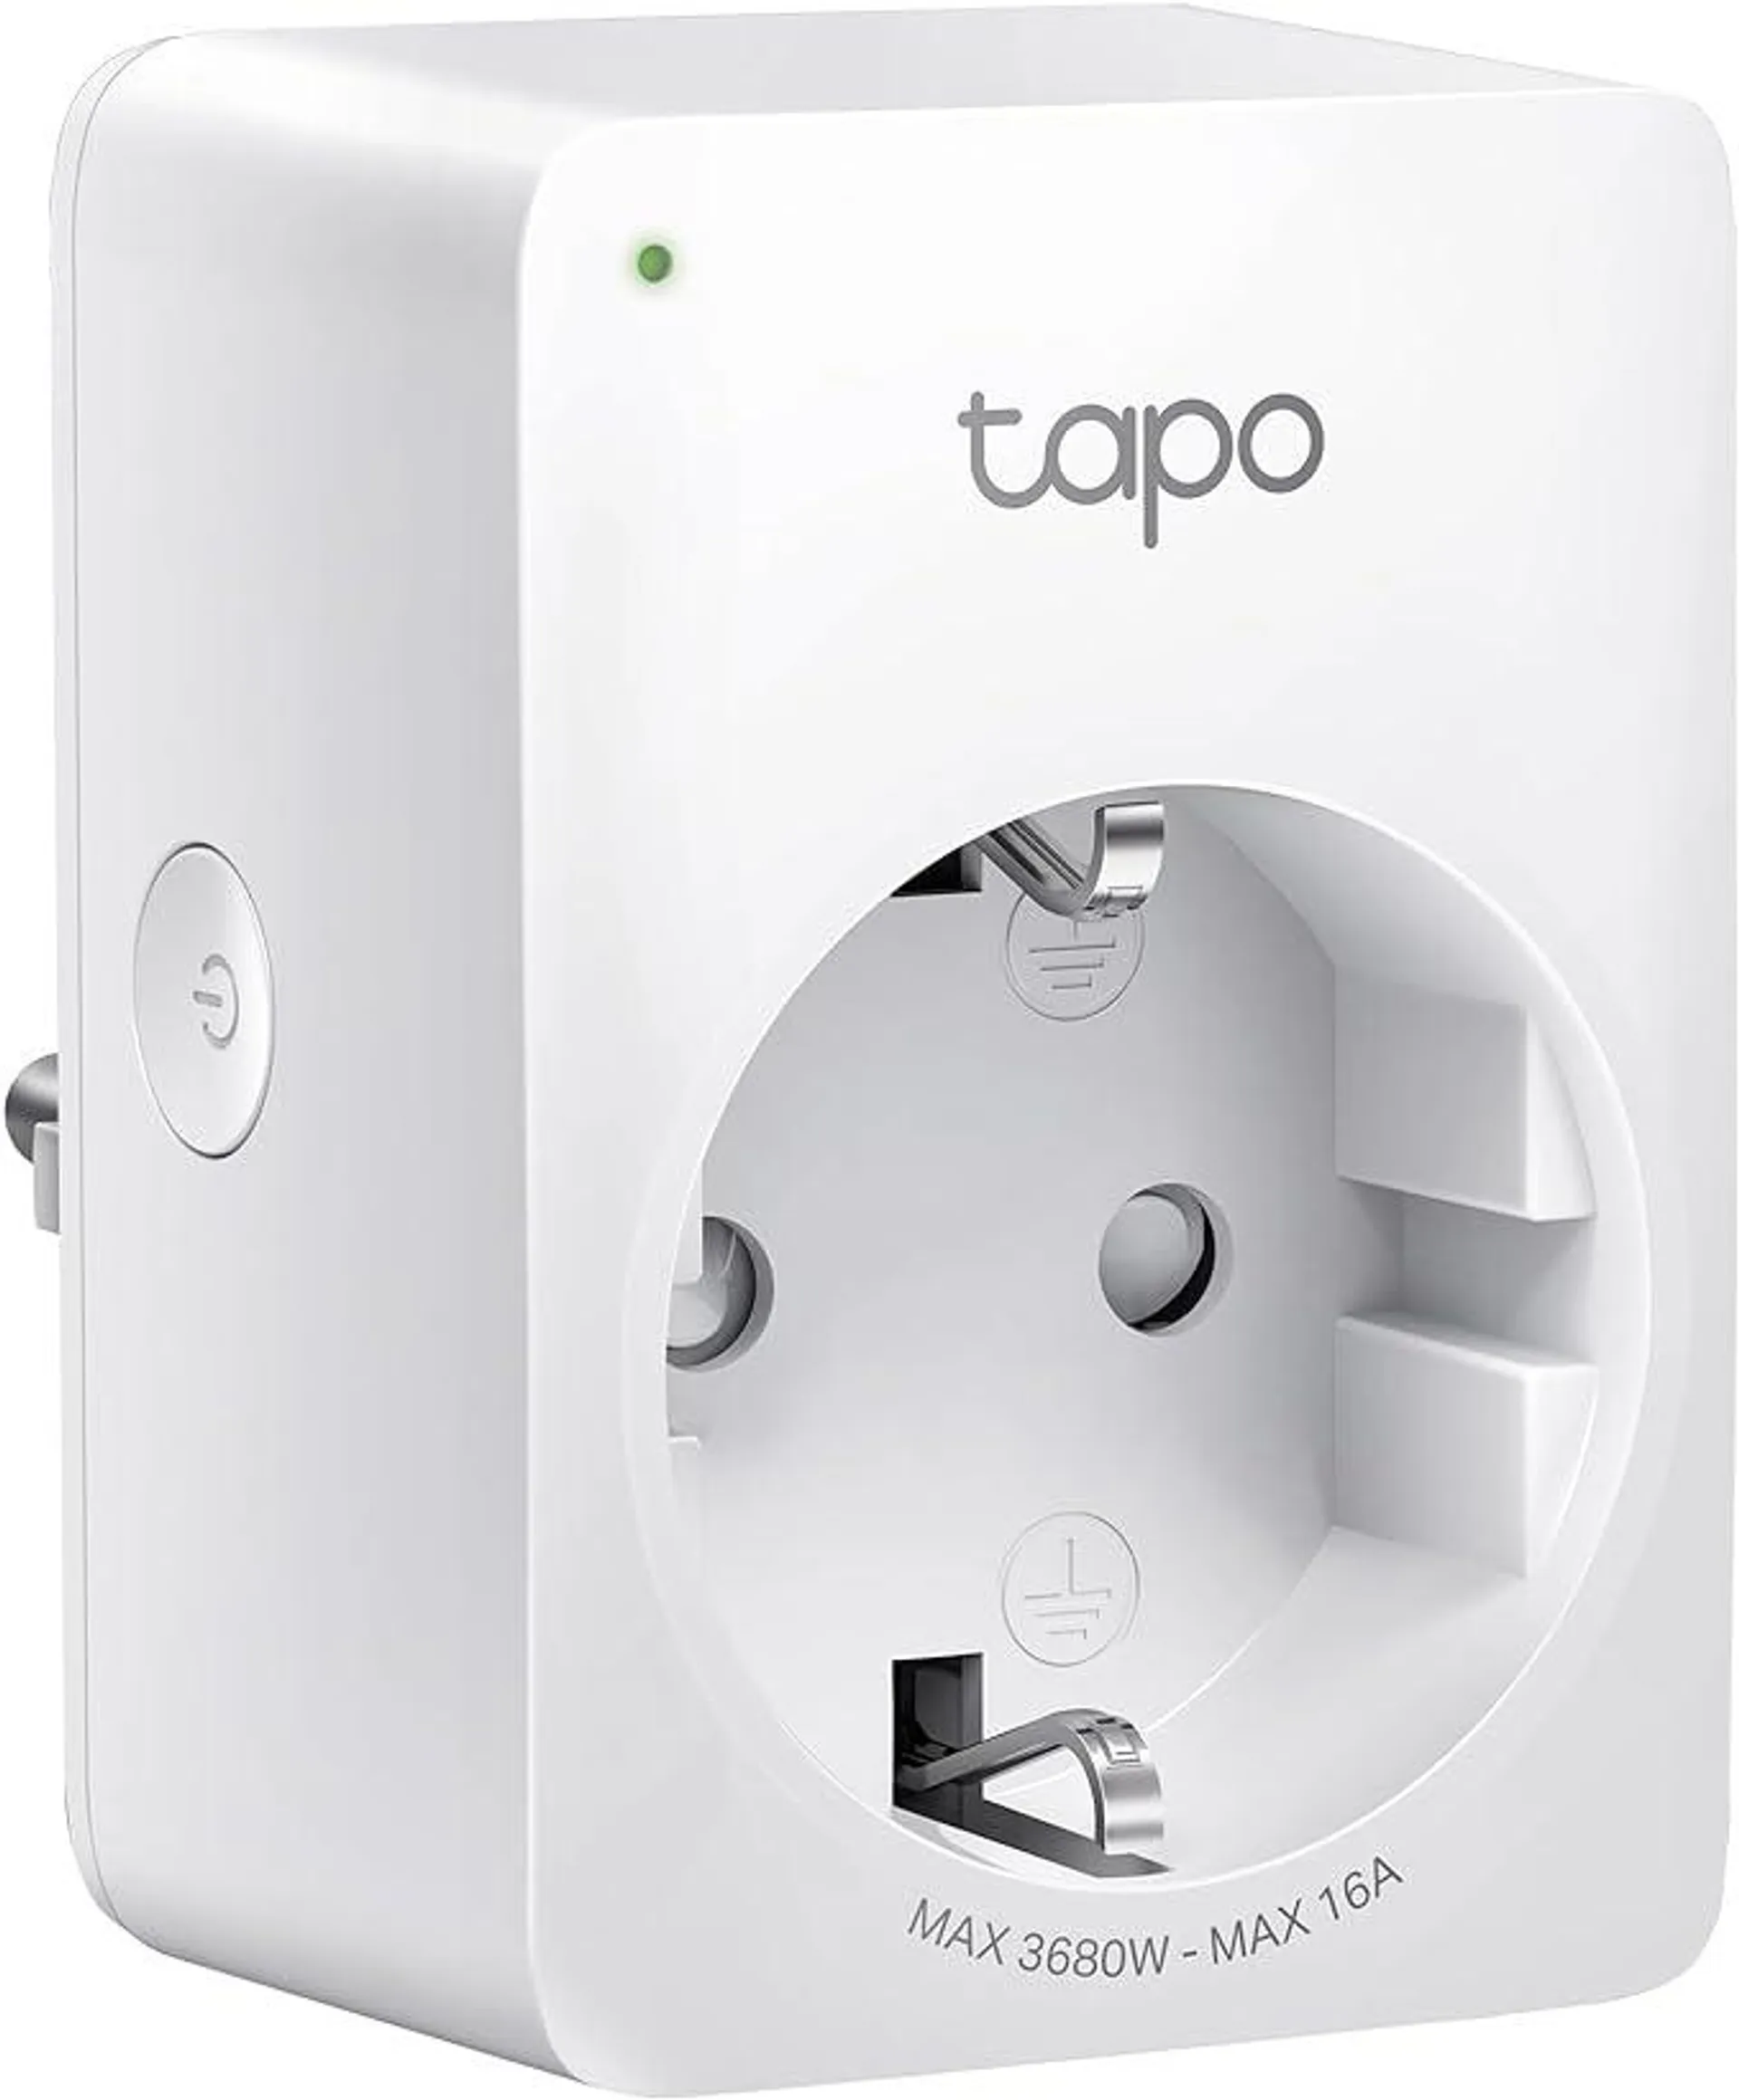 Tapo Smart WLAN Steckdose Tapo P110 mit Energieverbrauchskontrolle, Smart Home Alexa Steckdose, funktioniert mit Alexa, Google Home, Sprachsteuerung, Fernzugriff, Kein Hub notwendig, Mini